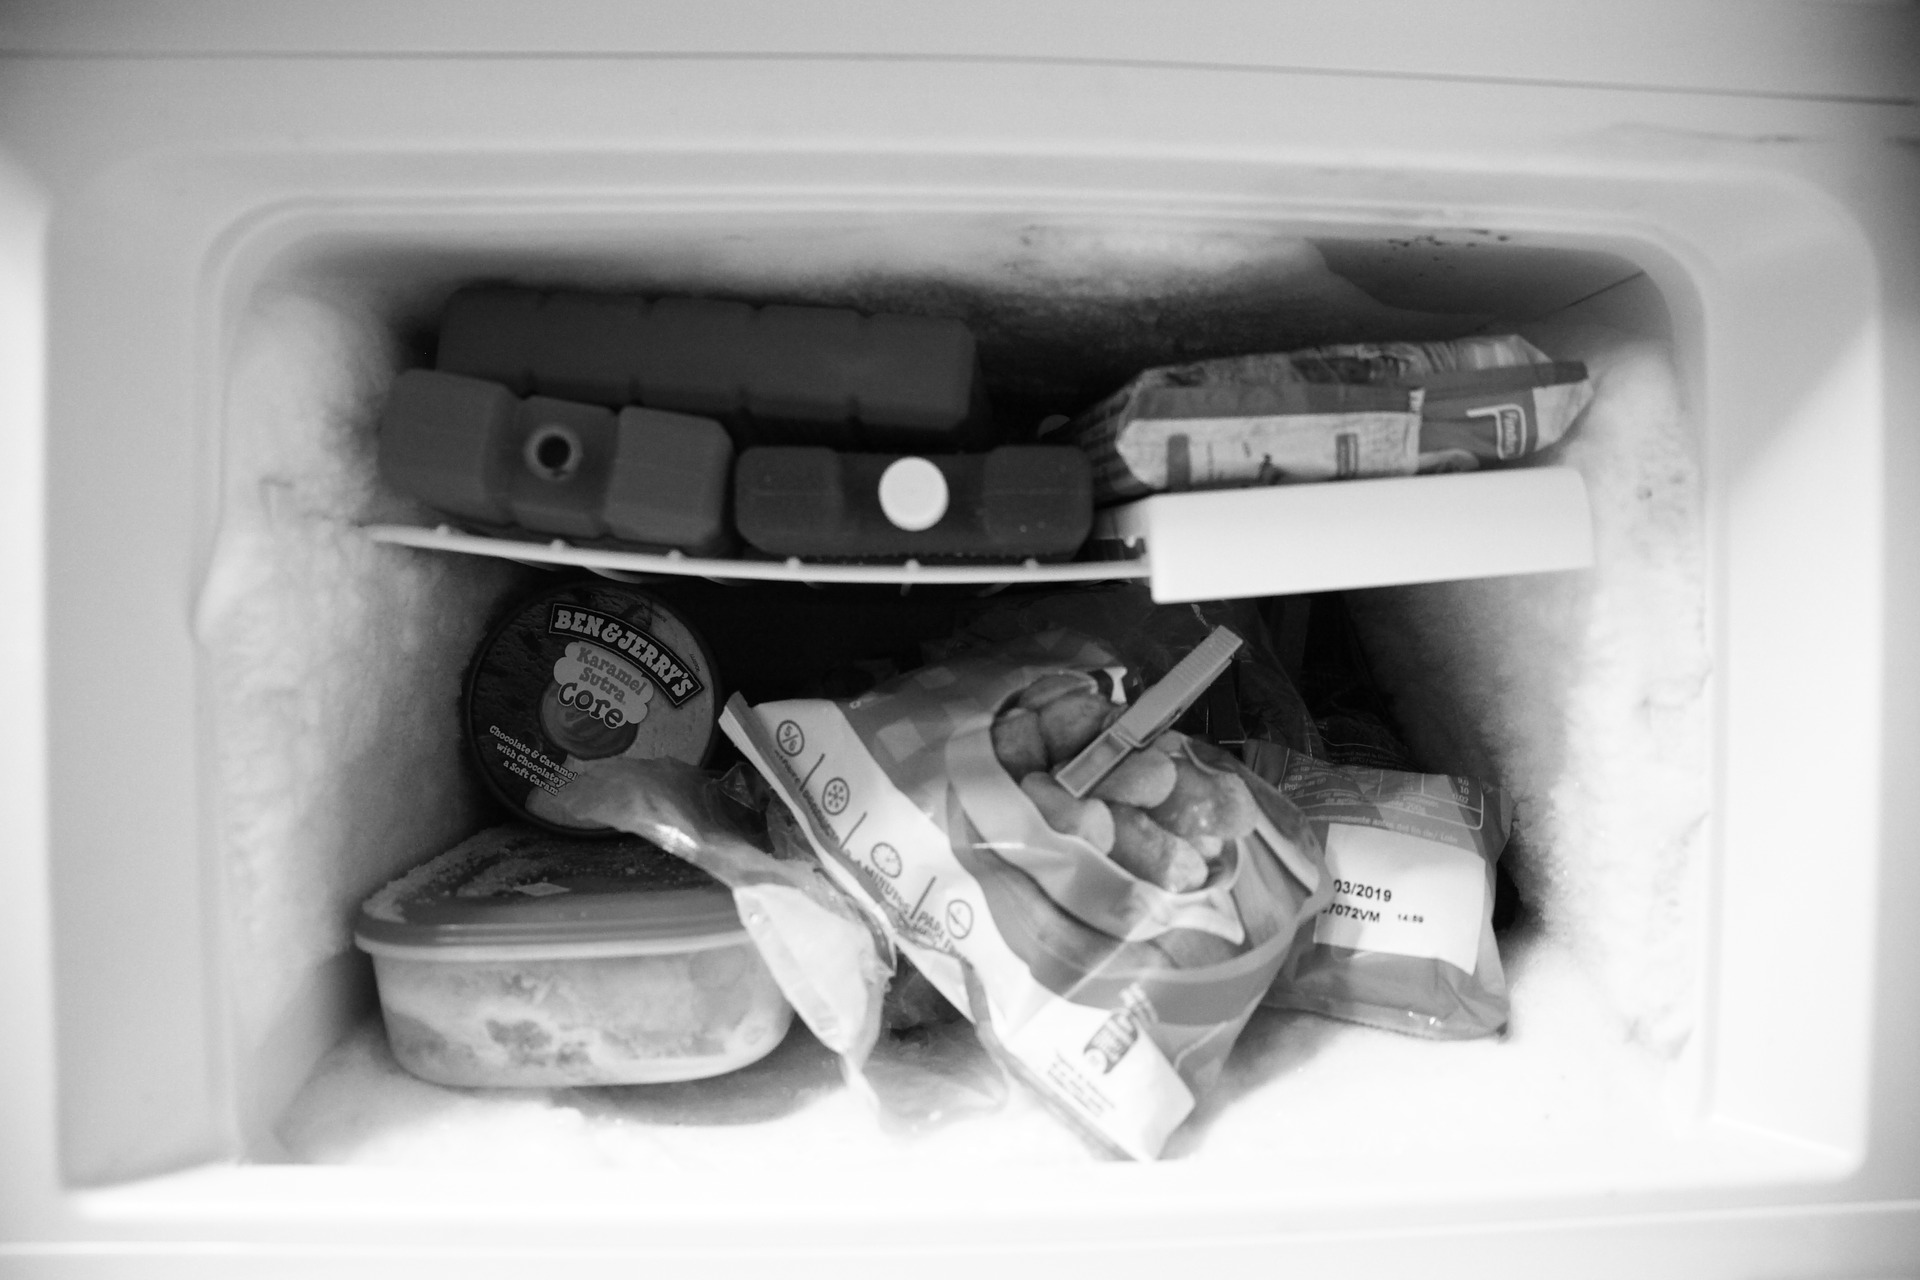 Freezer with items disorganized